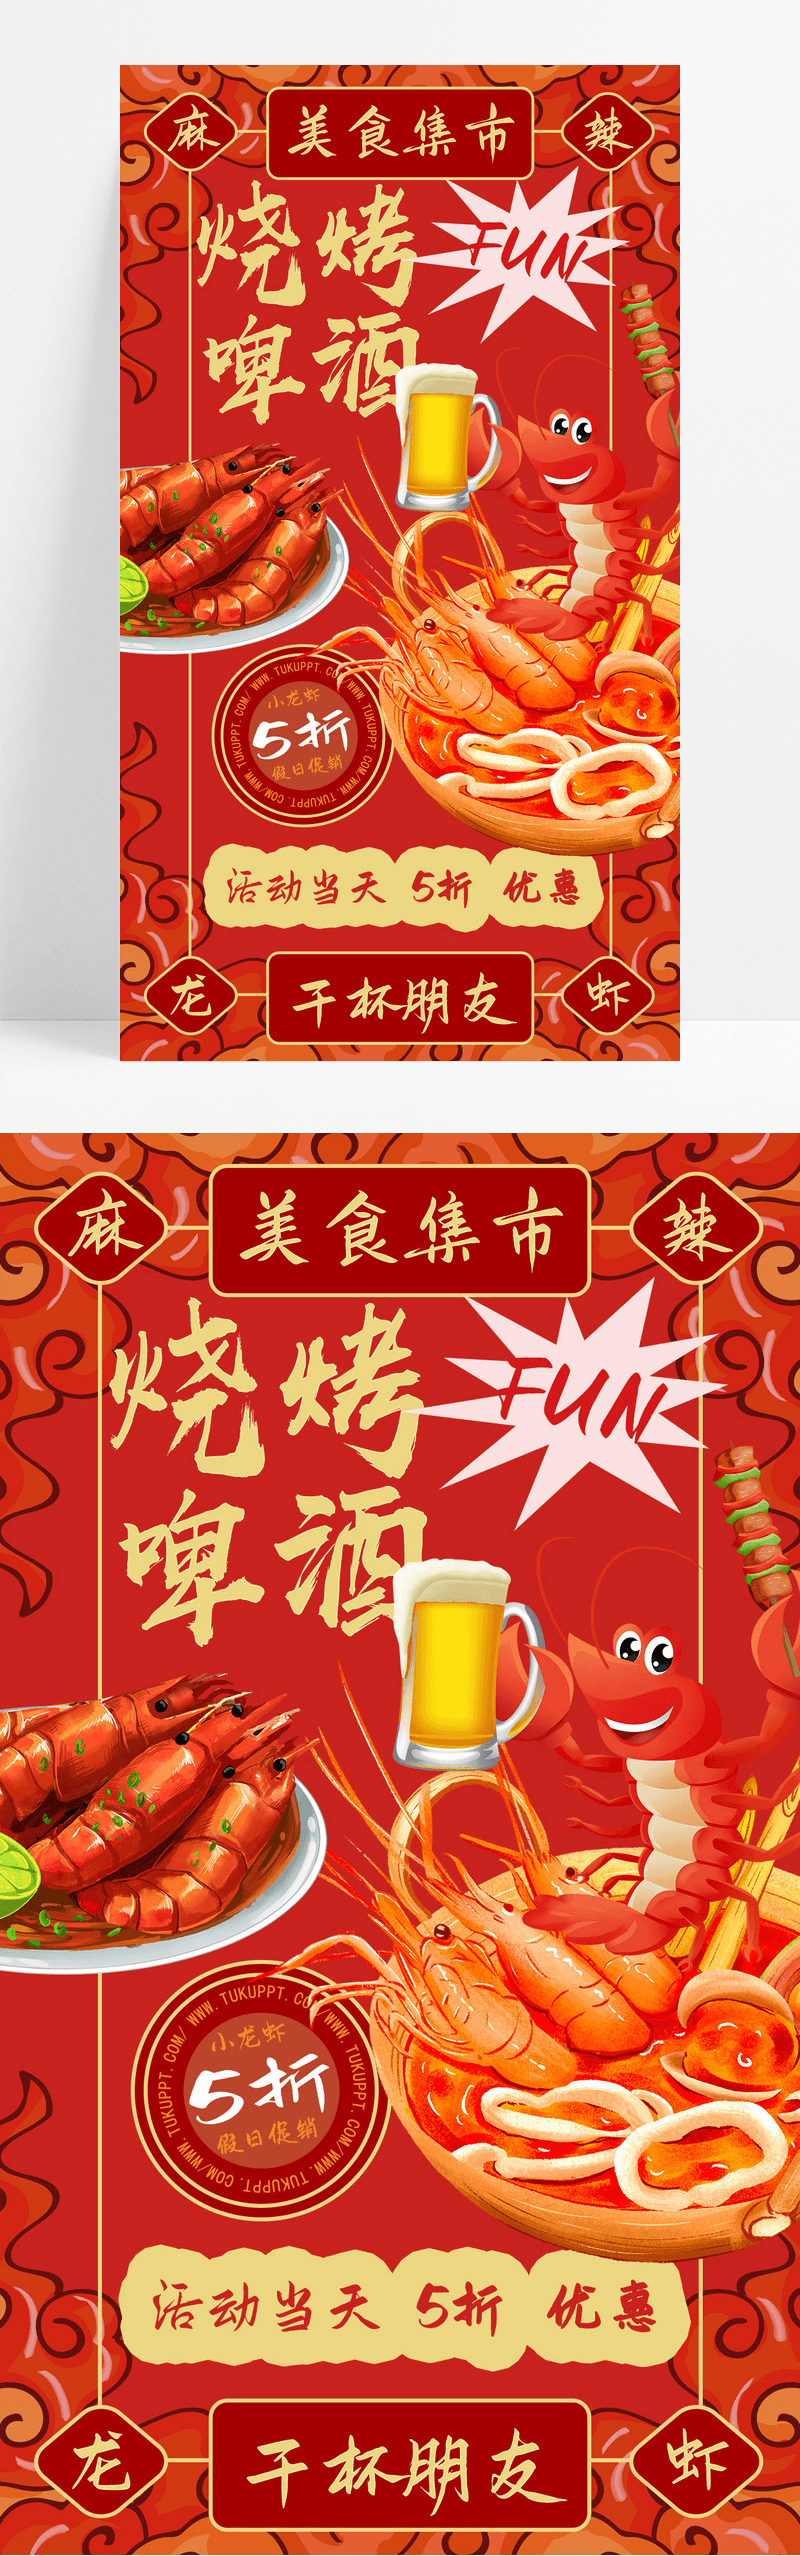 红色卡通烧烤啤酒美食餐饮宣传海报